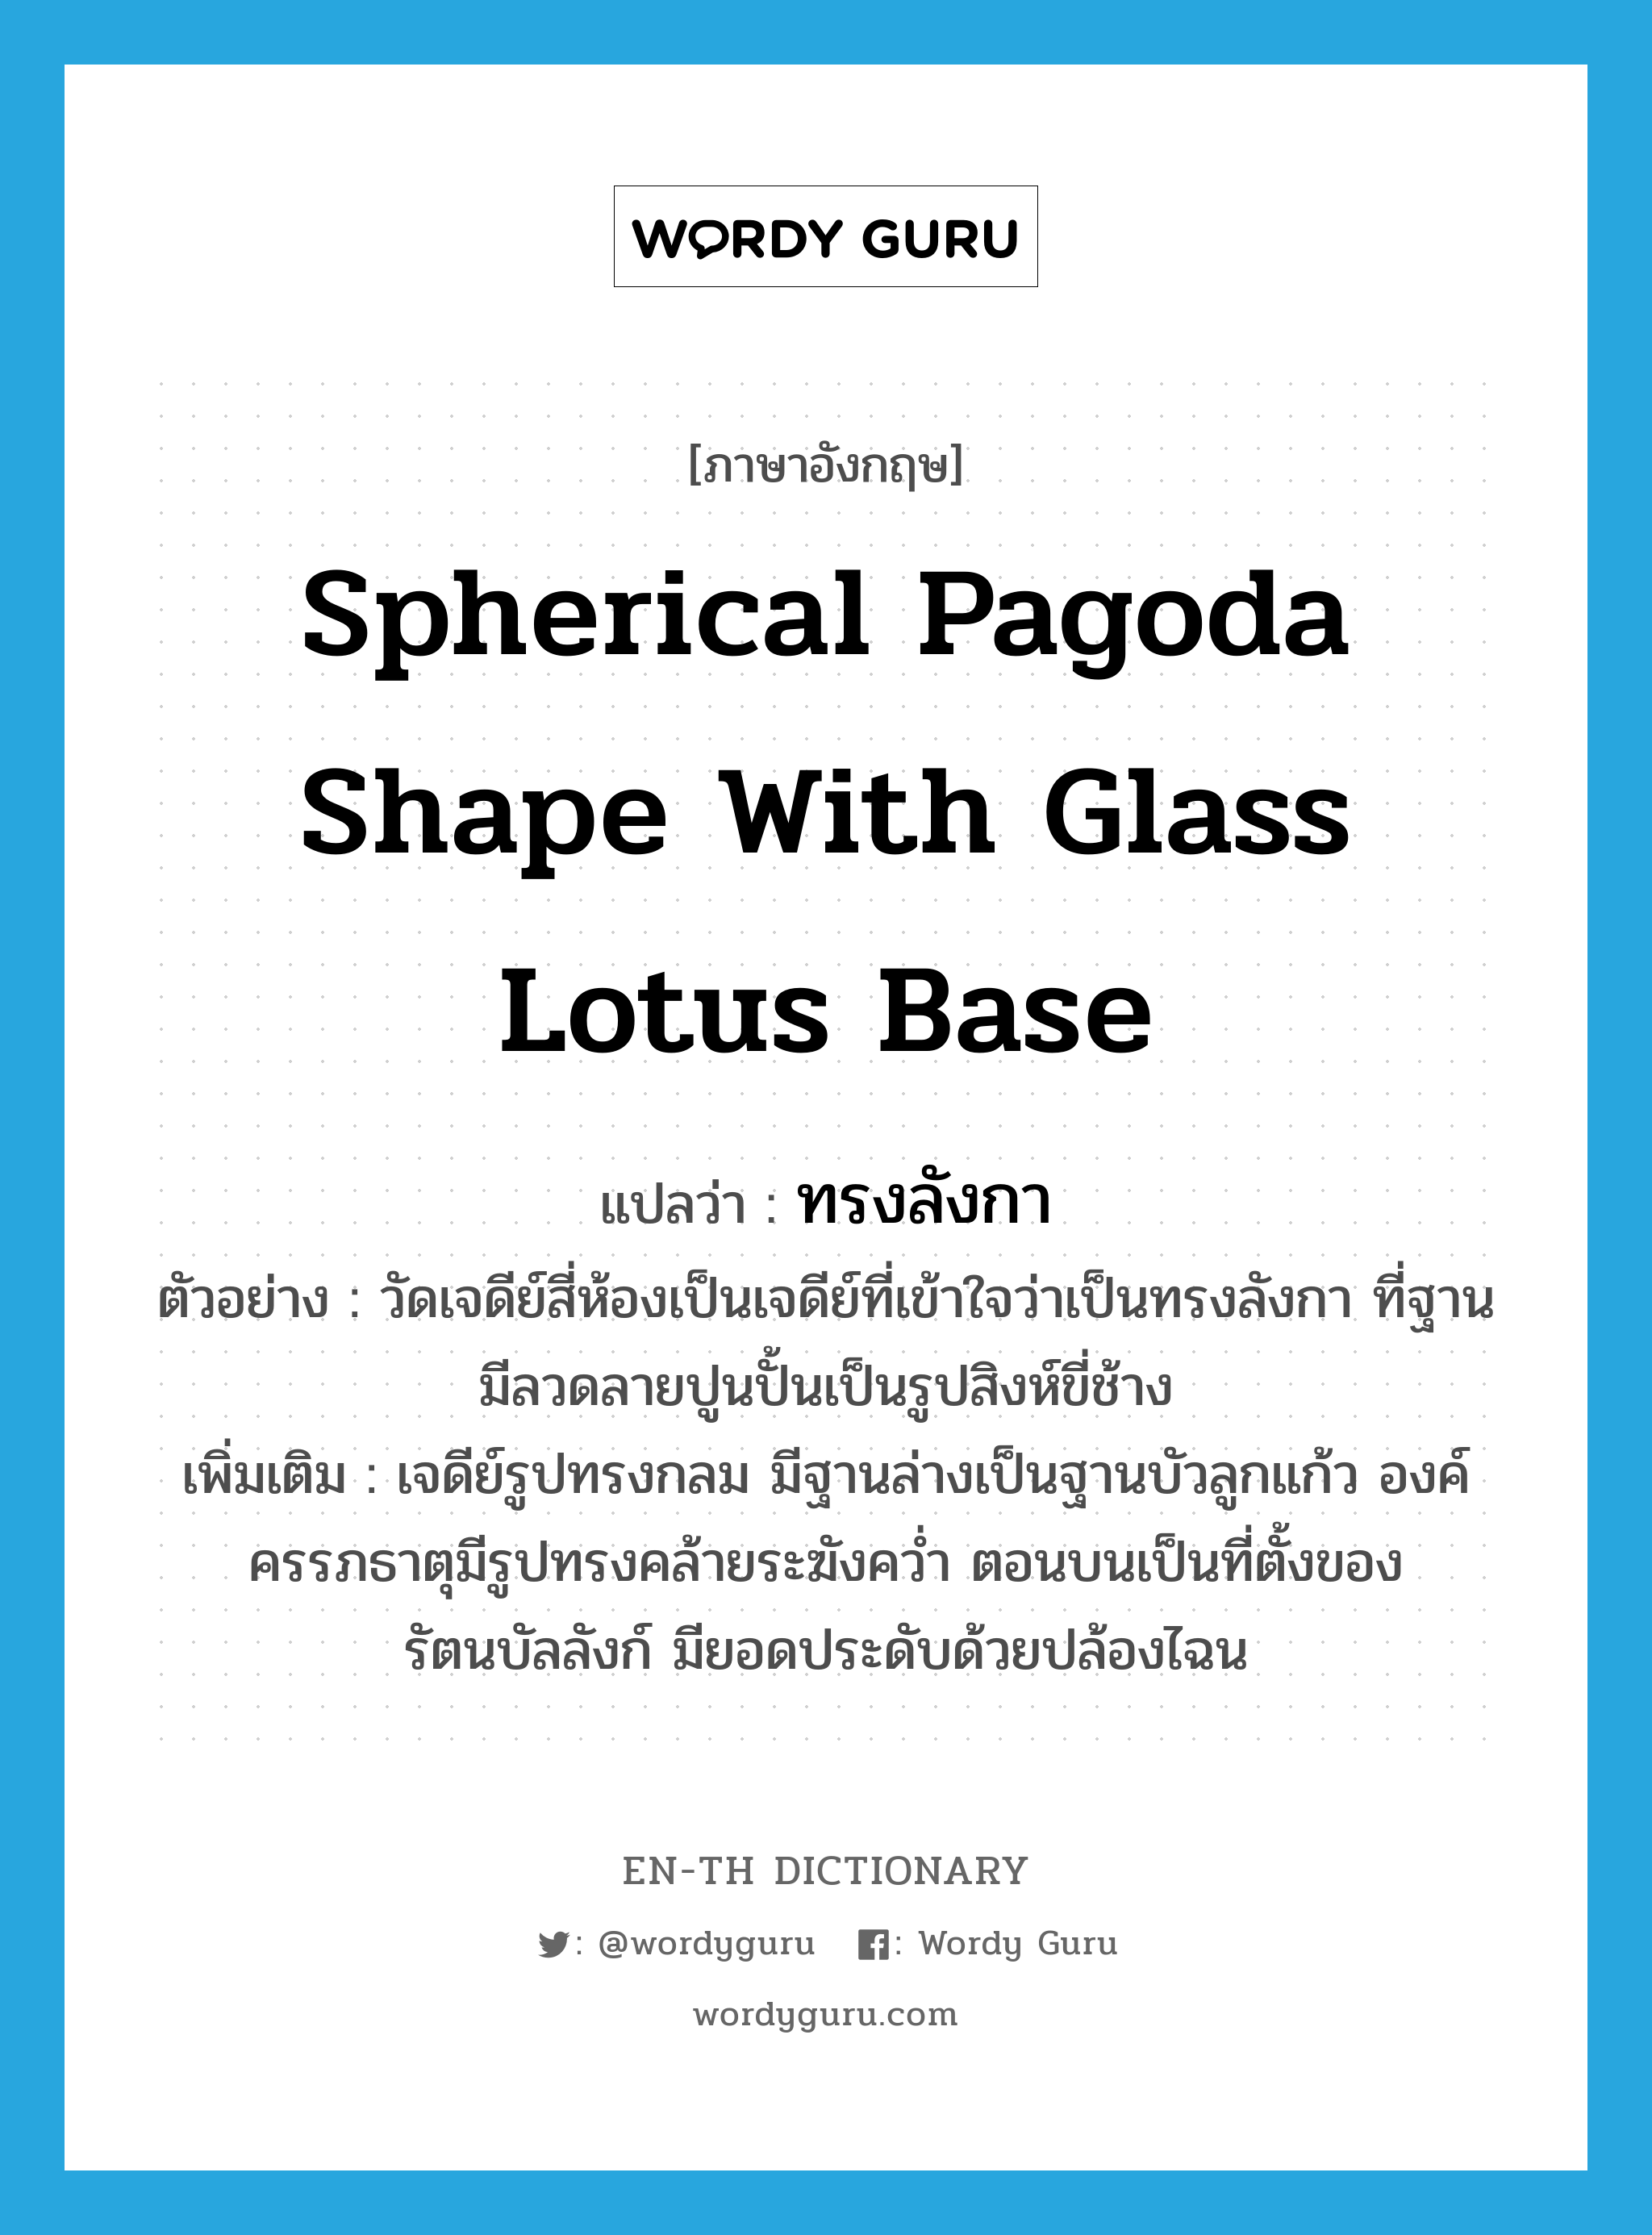 spherical pagoda shape with glass lotus base แปลว่า?, คำศัพท์ภาษาอังกฤษ spherical pagoda shape with glass lotus base แปลว่า ทรงลังกา ประเภท ADJ ตัวอย่าง วัดเจดีย์สี่ห้องเป็นเจดีย์ที่เข้าใจว่าเป็นทรงลังกา ที่ฐานมีลวดลายปูนปั้นเป็นรูปสิงห์ขี่ช้าง เพิ่มเติม เจดีย์รูปทรงกลม มีฐานล่างเป็นฐานบัวลูกแก้ว องค์ครรภธาตุมีรูปทรงคล้ายระฆังคว่ำ ตอนบนเป็นที่ตั้งของรัตนบัลลังก์ มียอดประดับด้วยปล้องไฉน หมวด ADJ